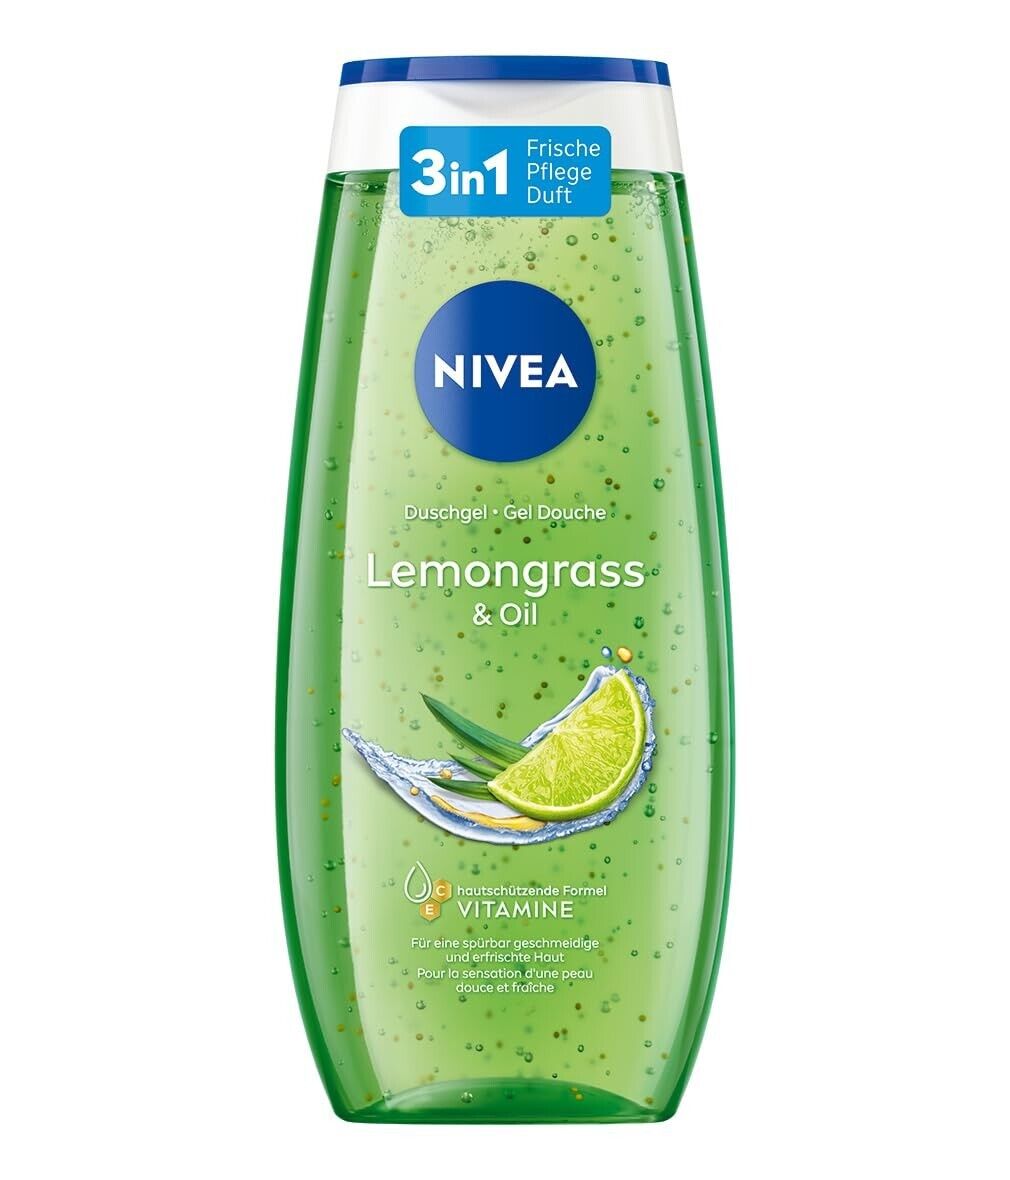 NIVEA, Lemongrass & Oil Duschgel, 250ml Pflege-Dusche, Körper/Gesicht/Haar 24h